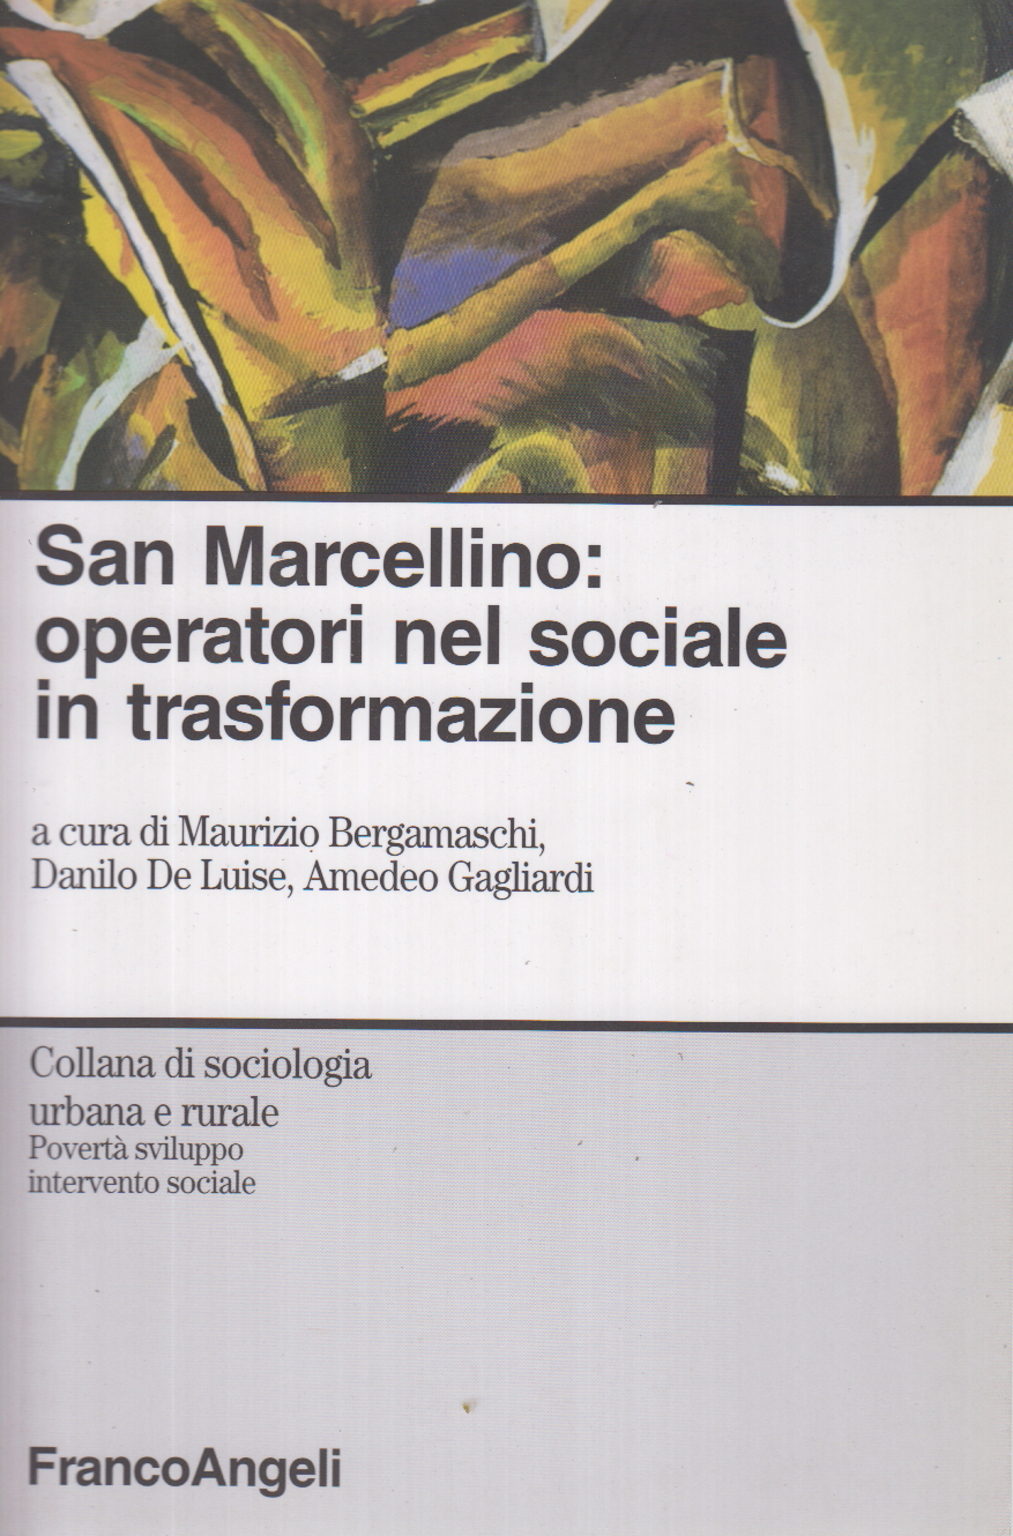 San Marcellino: operatori nel sociale in trasforma, Maurizio Bergamaschi Danilo De Luise Amedeo Gagliardi